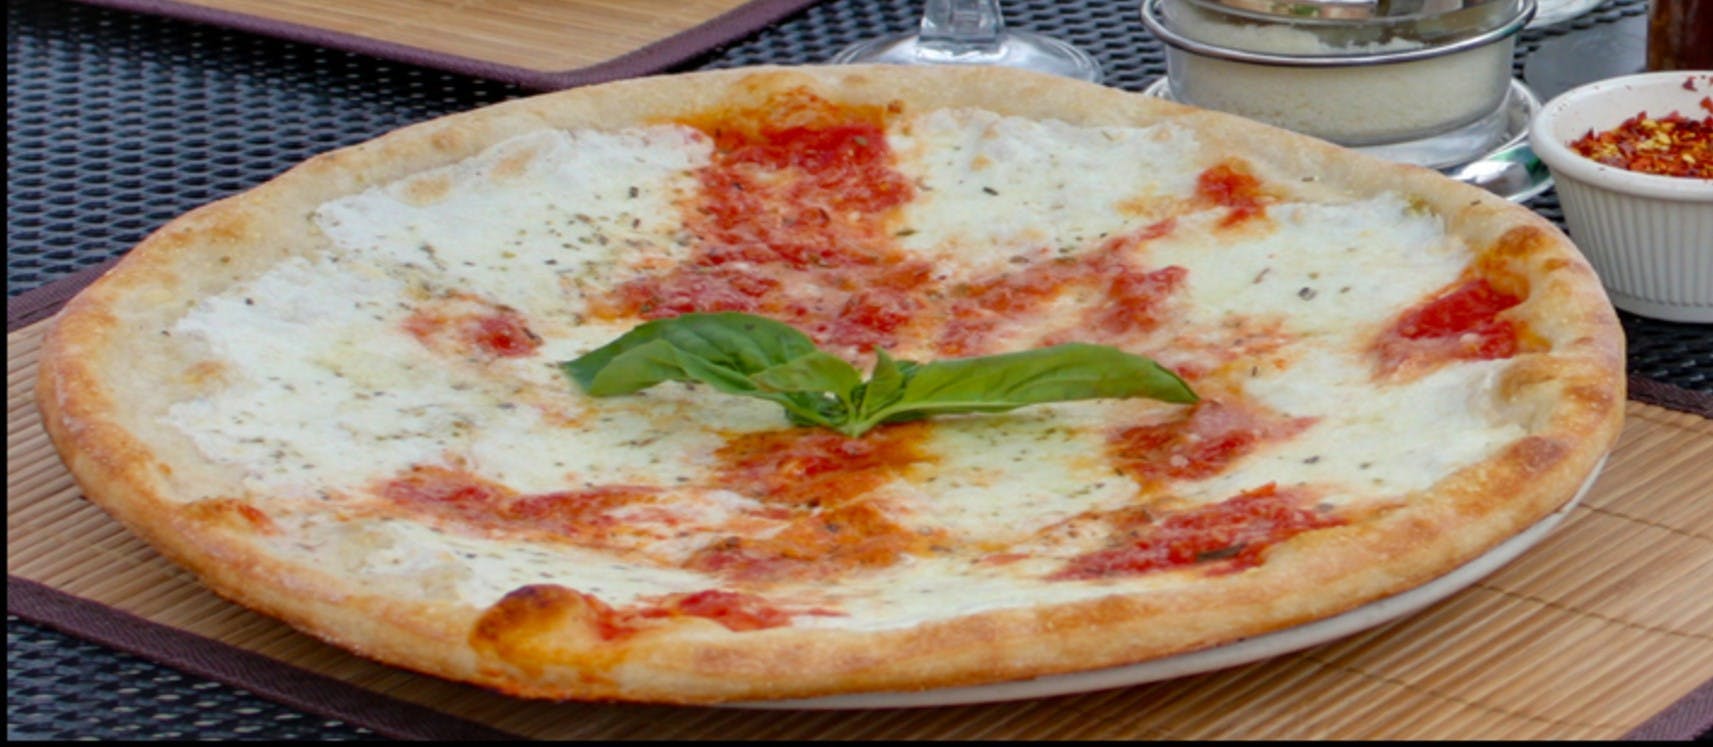 Parkside Pizza - Casa Turano hero